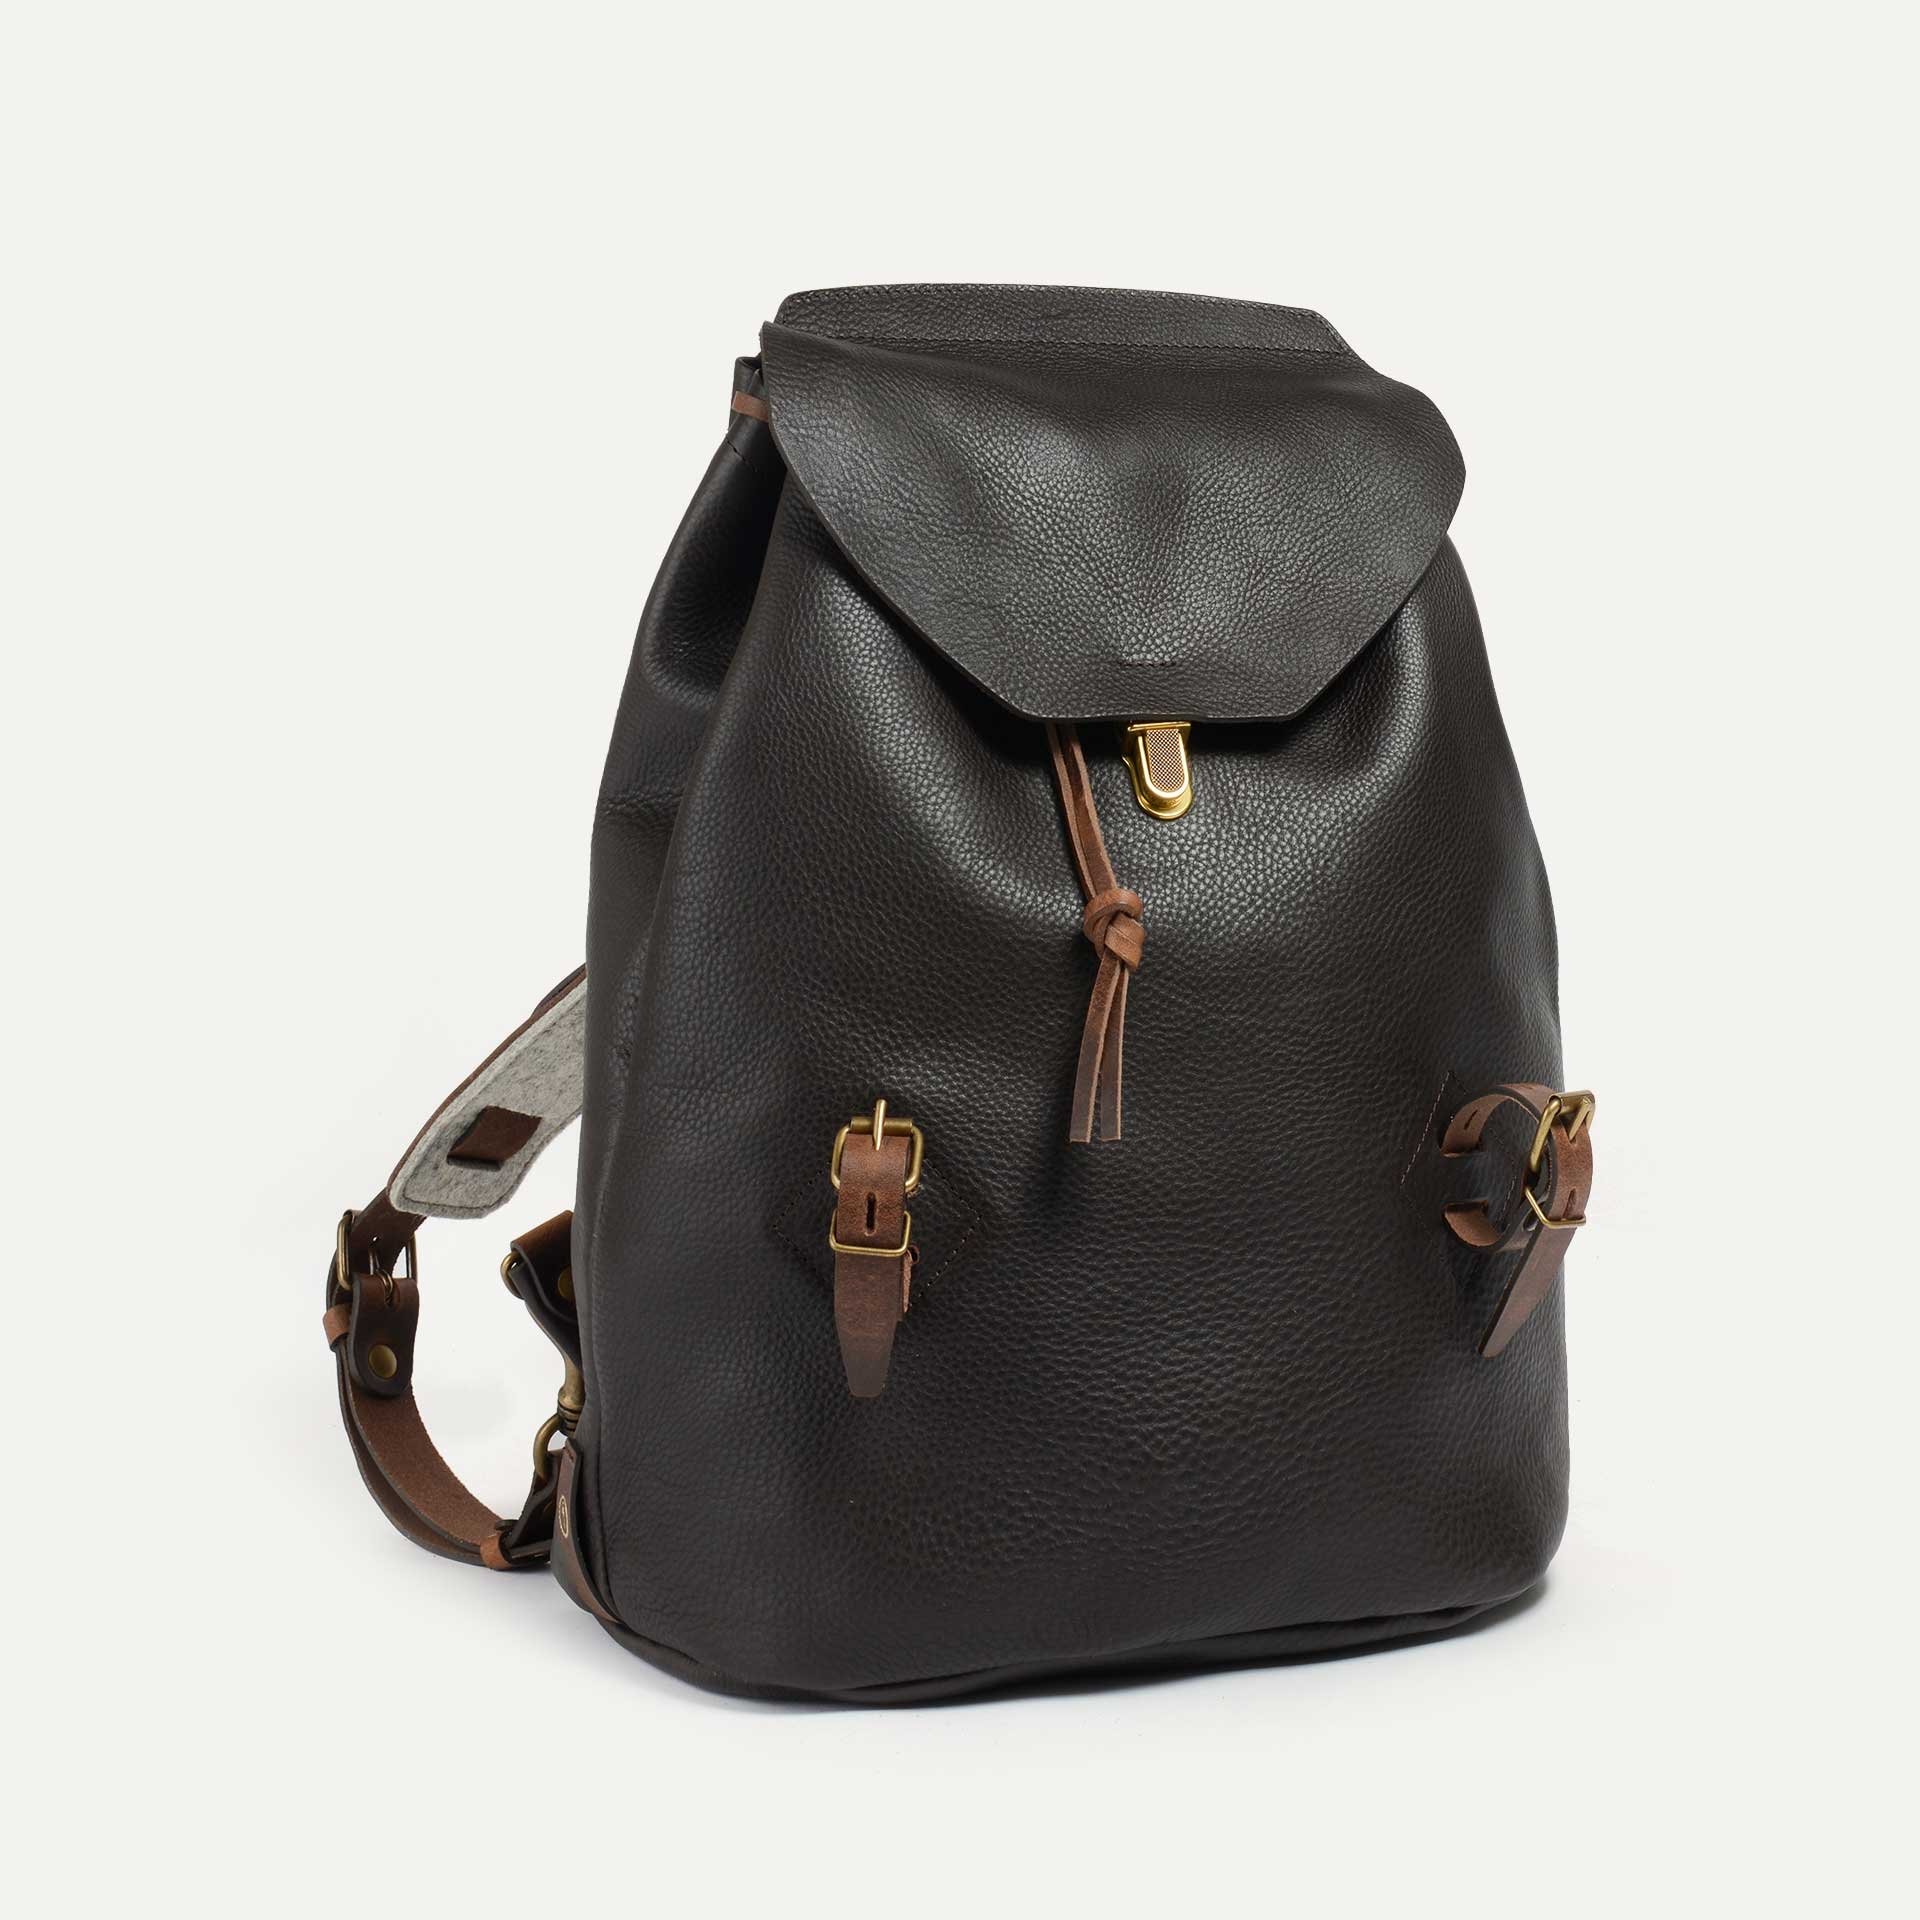 Zibeline Backpack - Dark Brown (image n°1)